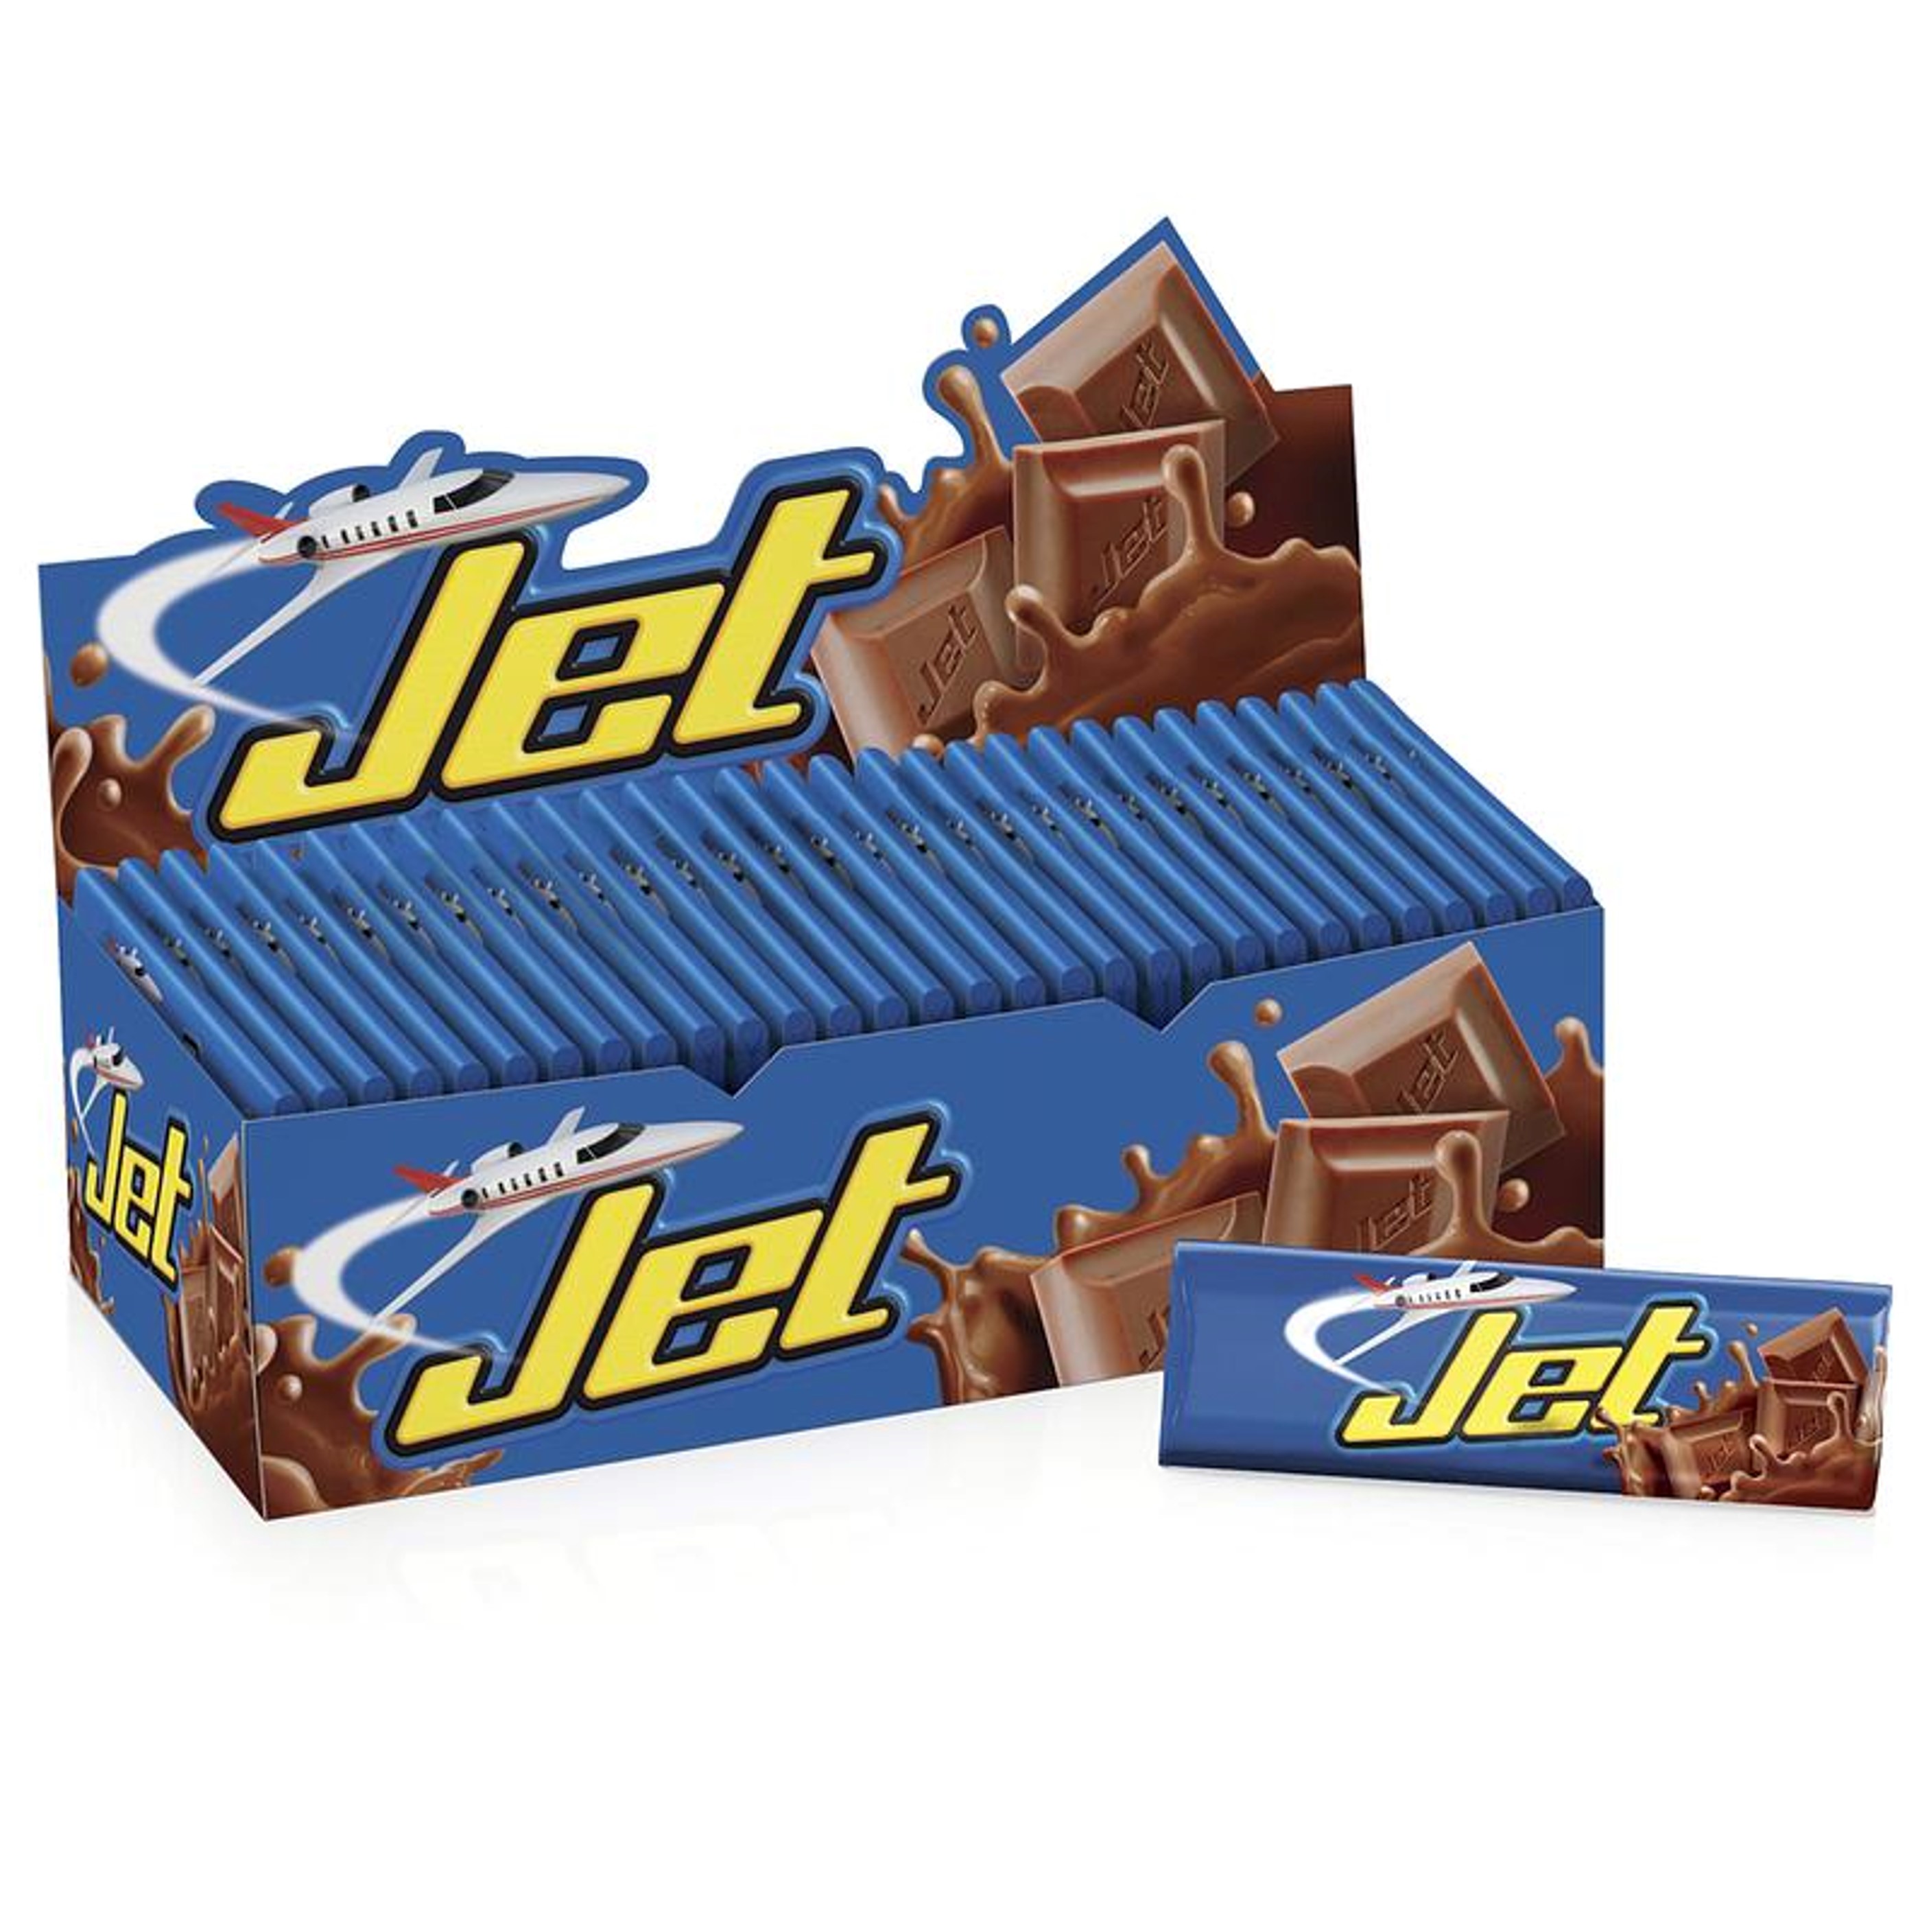 Chocolatinas Jet, Chocolisto y otros productos cambian de dueño en Colombia. Ahora serán del Grupo Gilinski, por compra de Nutresa.